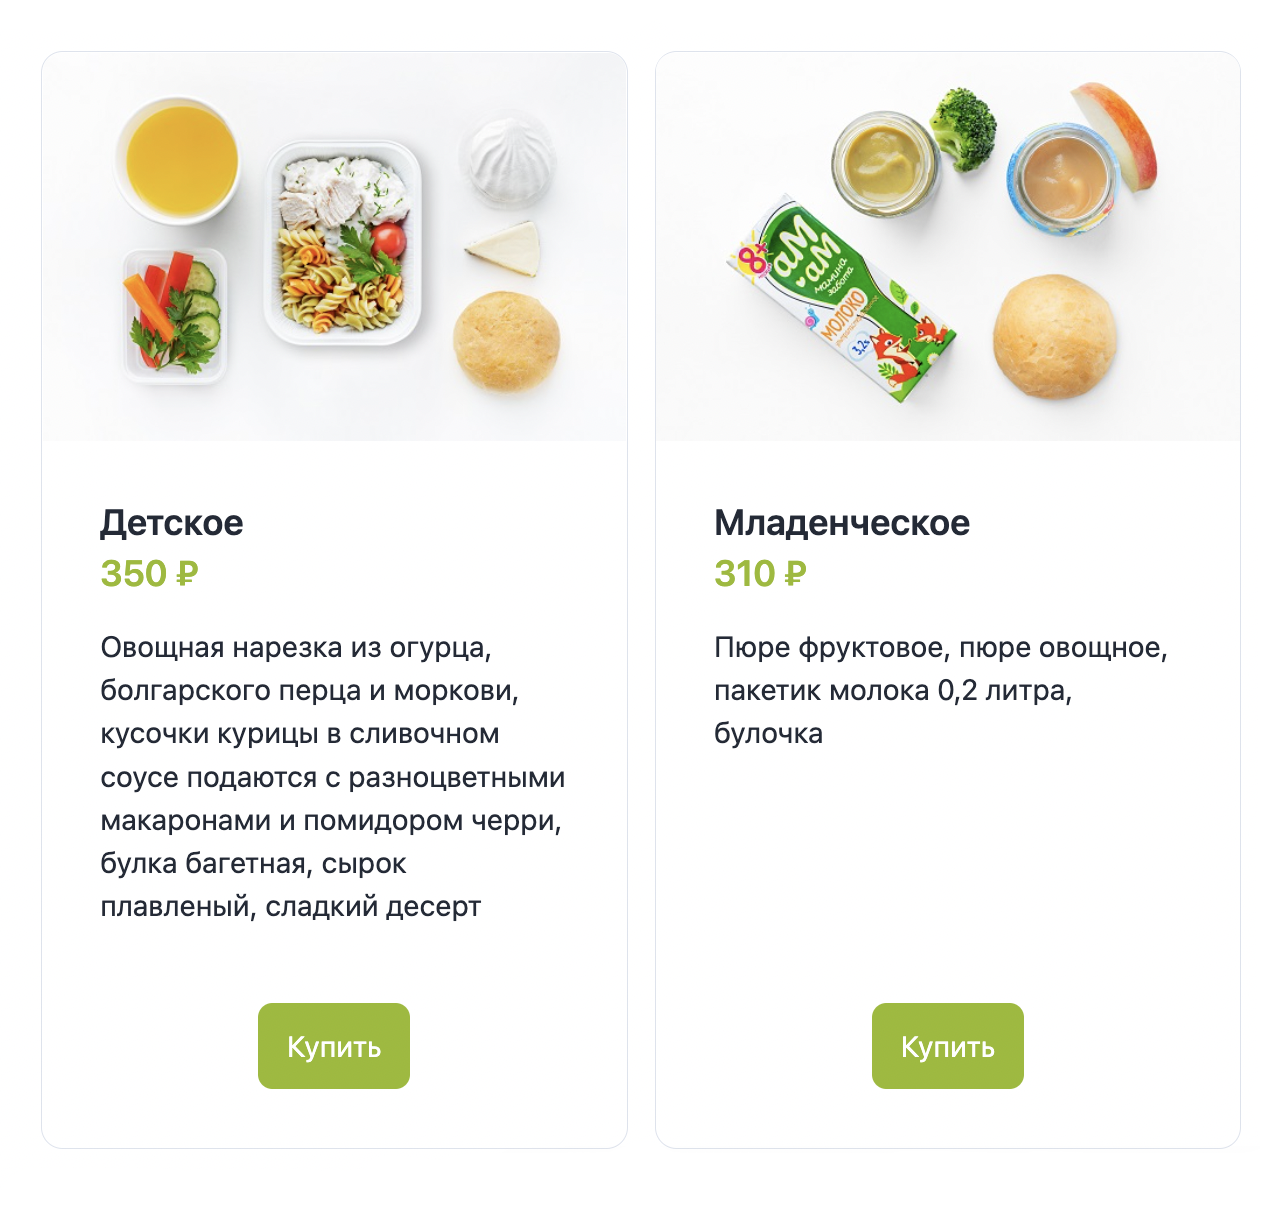 Так выглядит детское и младенческое питание на борту S7. Источник: s7.ru